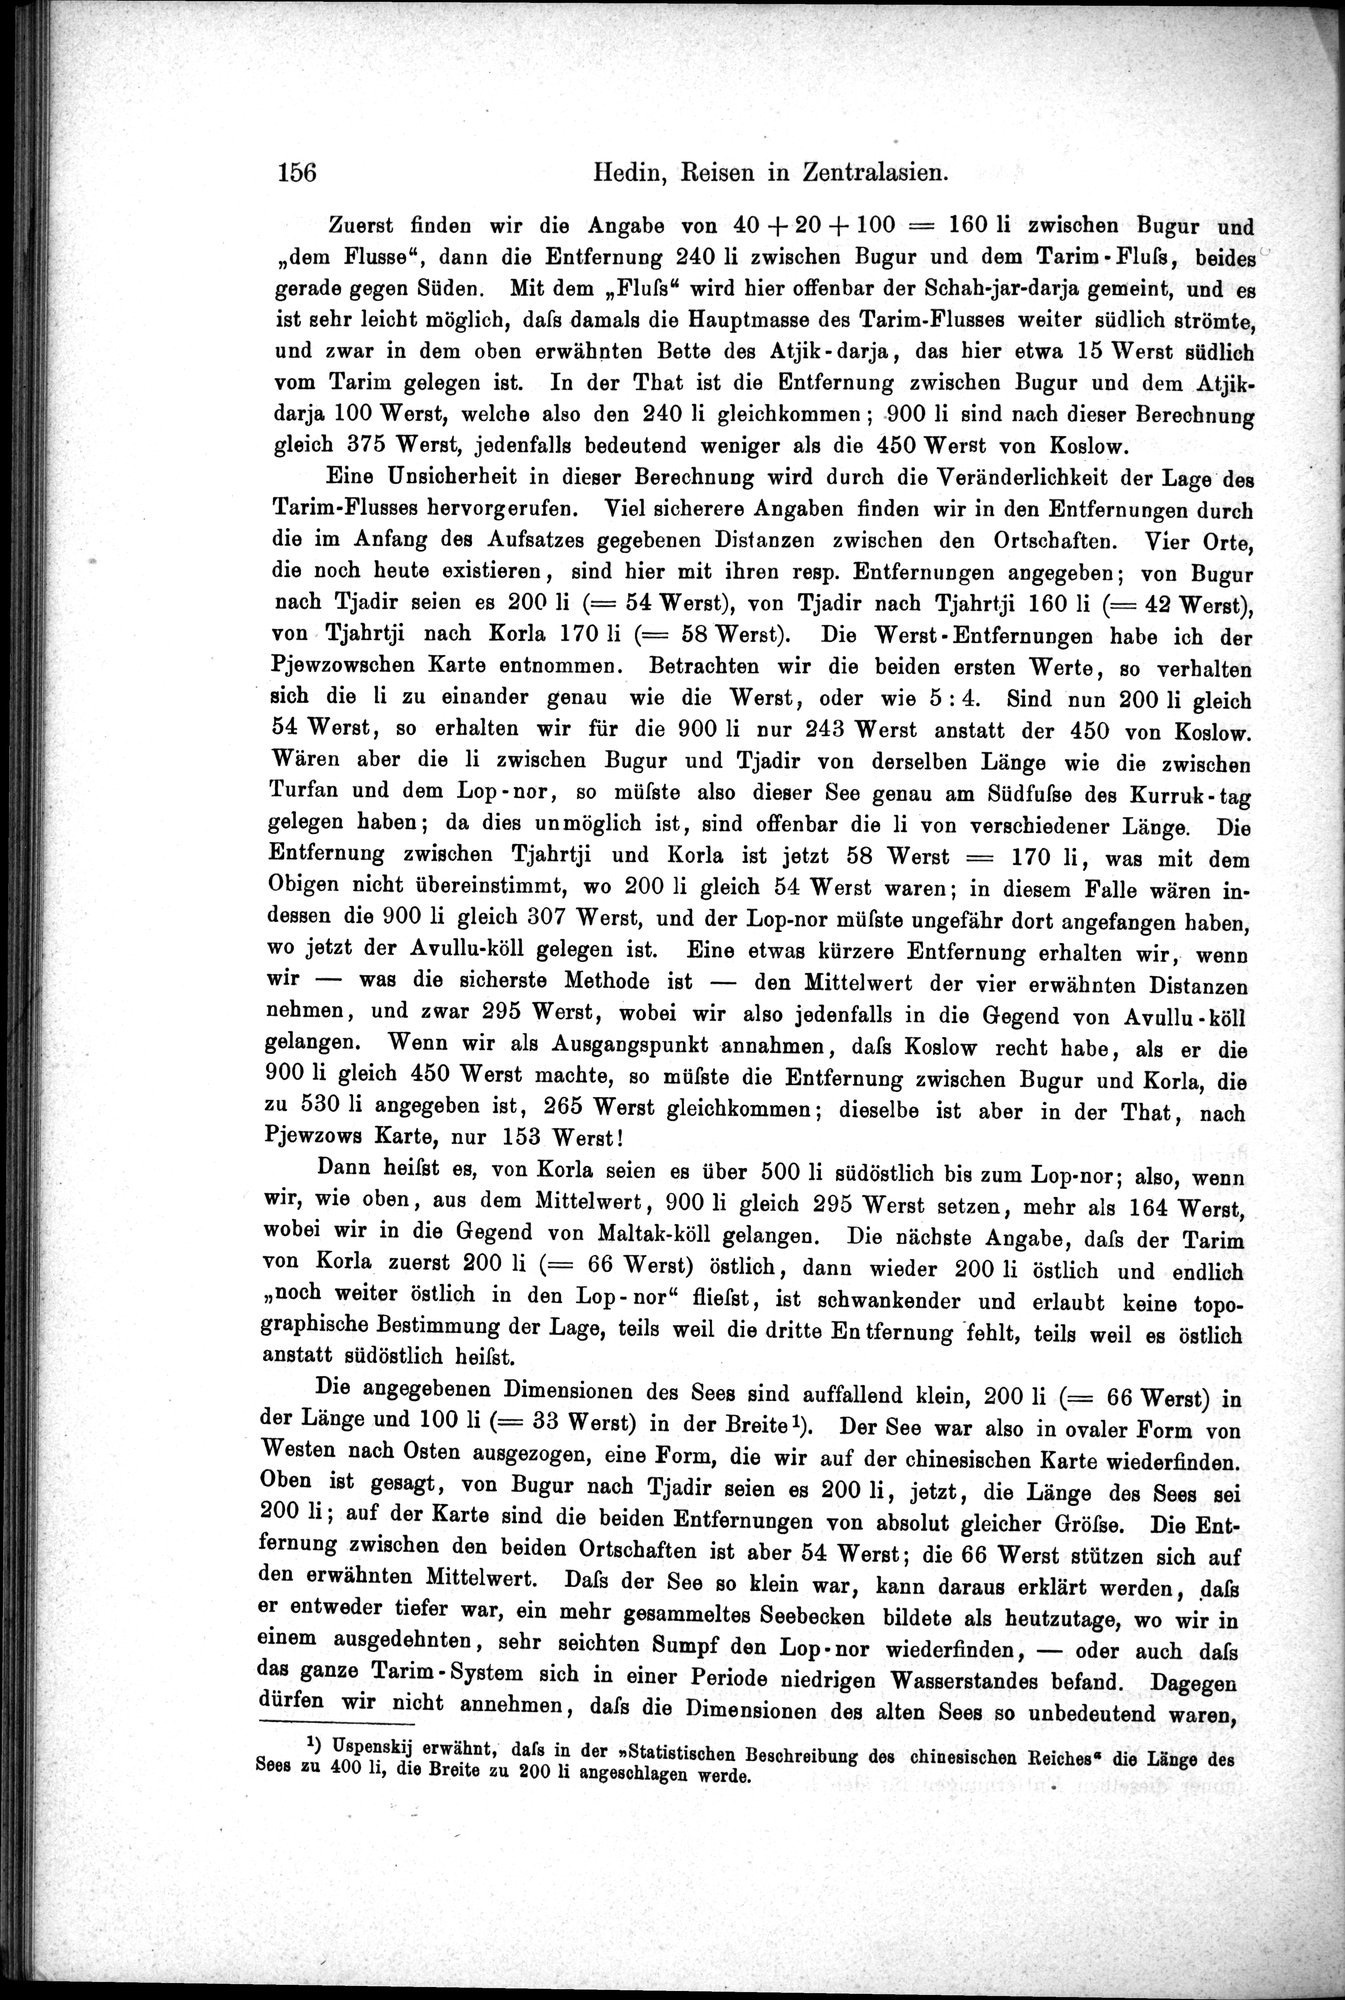 Die Geographische-Wissenschaftlichen Ergebnisse meiner Reisen in Zentralasien, 1894-1897 : vol.1 / Page 168 (Grayscale High Resolution Image)